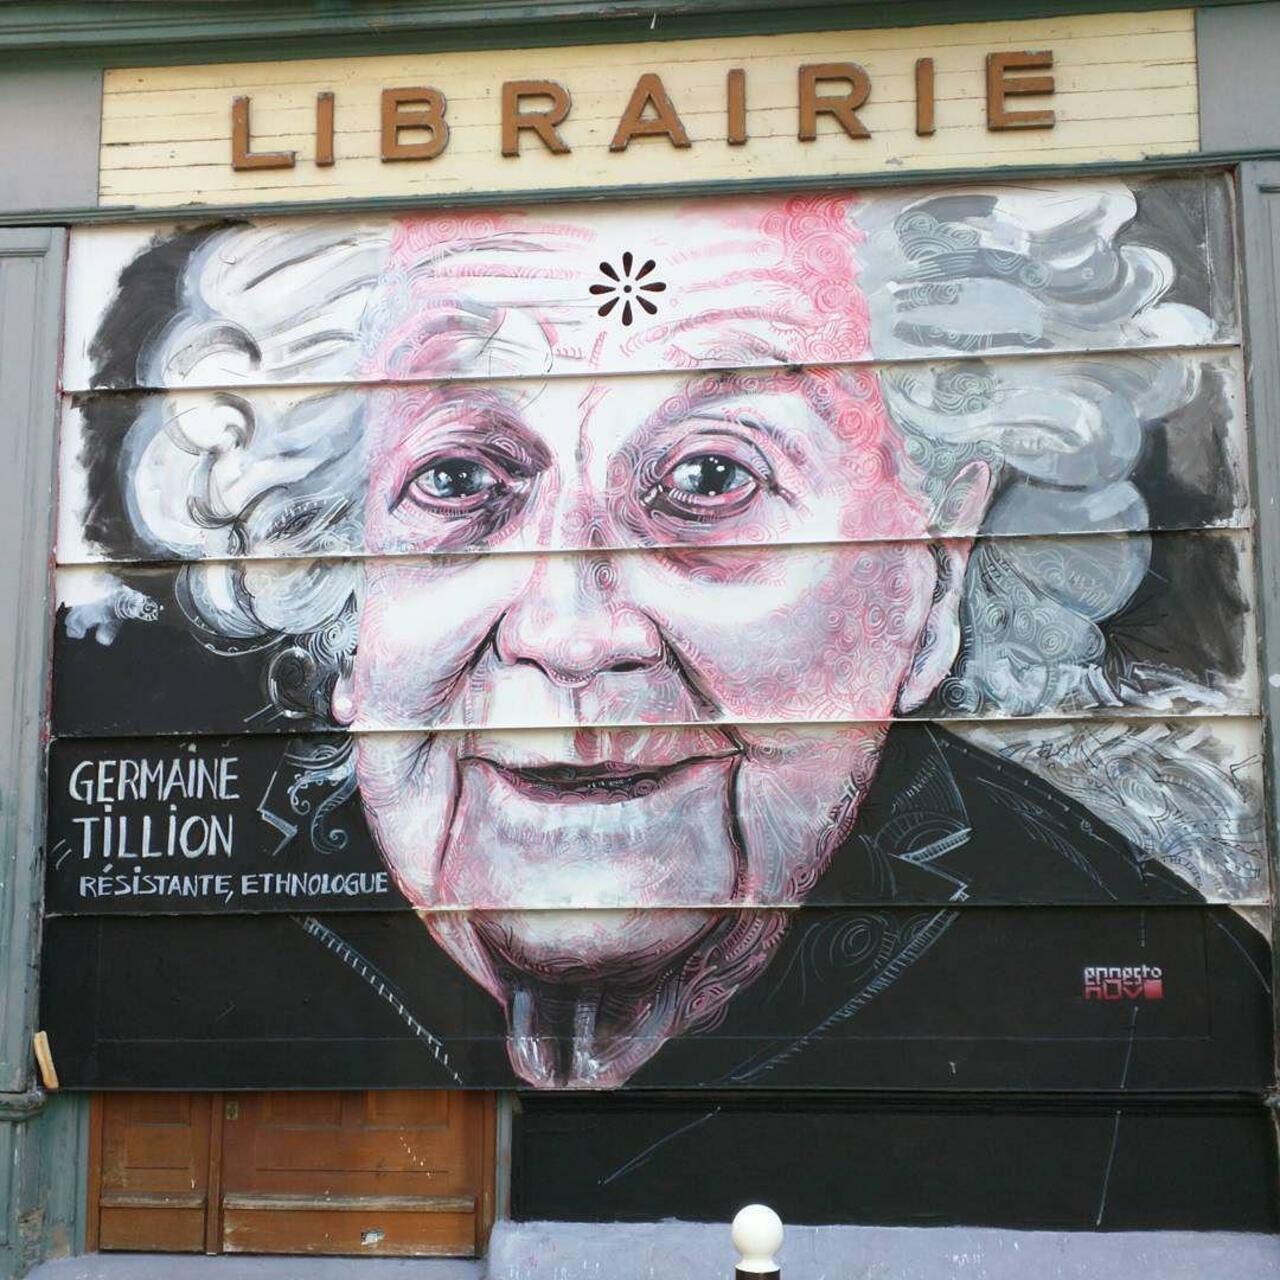 #Paris #graffiti photo by @alphaquadra http://ift.tt/1jDE2kA #StreetArt http://t.co/JsoGuZONz1